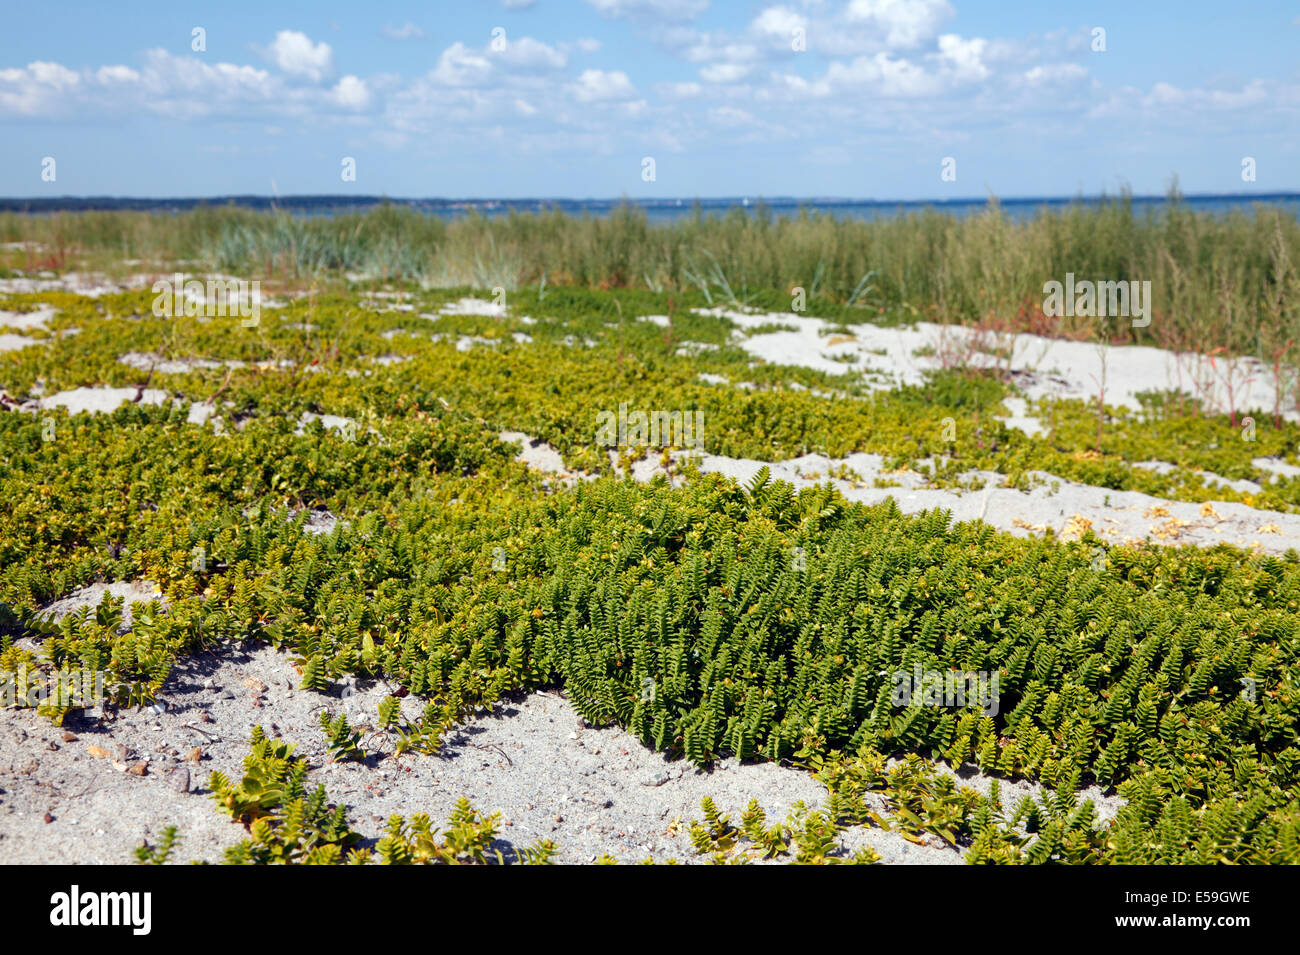 Bord de mer sandwort ou sandplant, Honckenya peploides, dans le sable d'une plage à l'Øresund, le son, au Danemark, où acheter. Banque D'Images